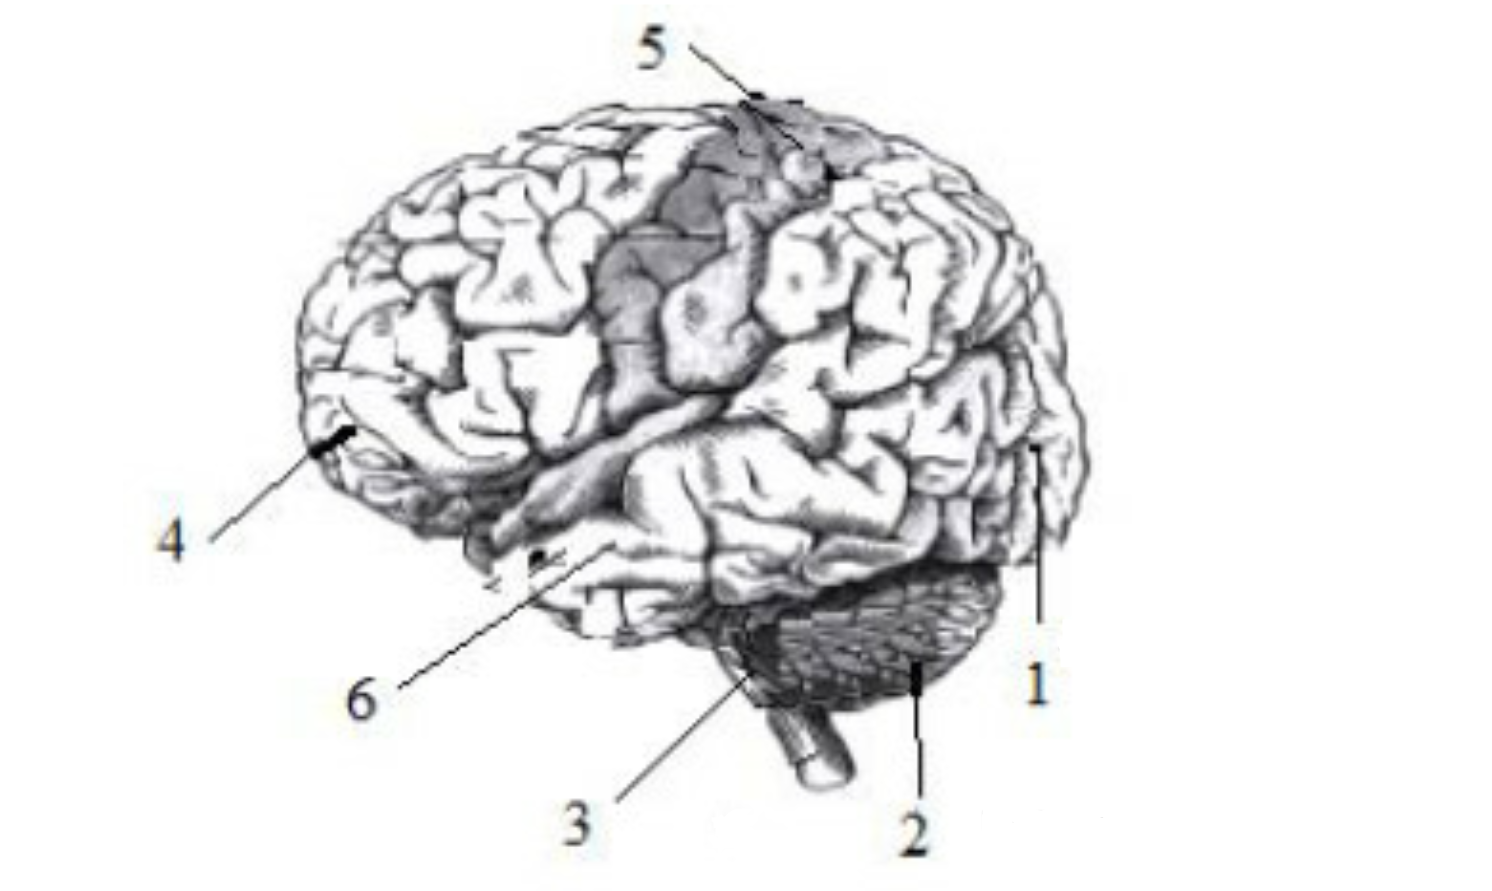 Тест мозга 4. Головной мозг рисунок с подписями. Выберите три верно обозначенные подписи к рисунку головного мозга. Головной мозг нарисовать. Три верно обозначенные подписи к рисунку строение головного мозга.